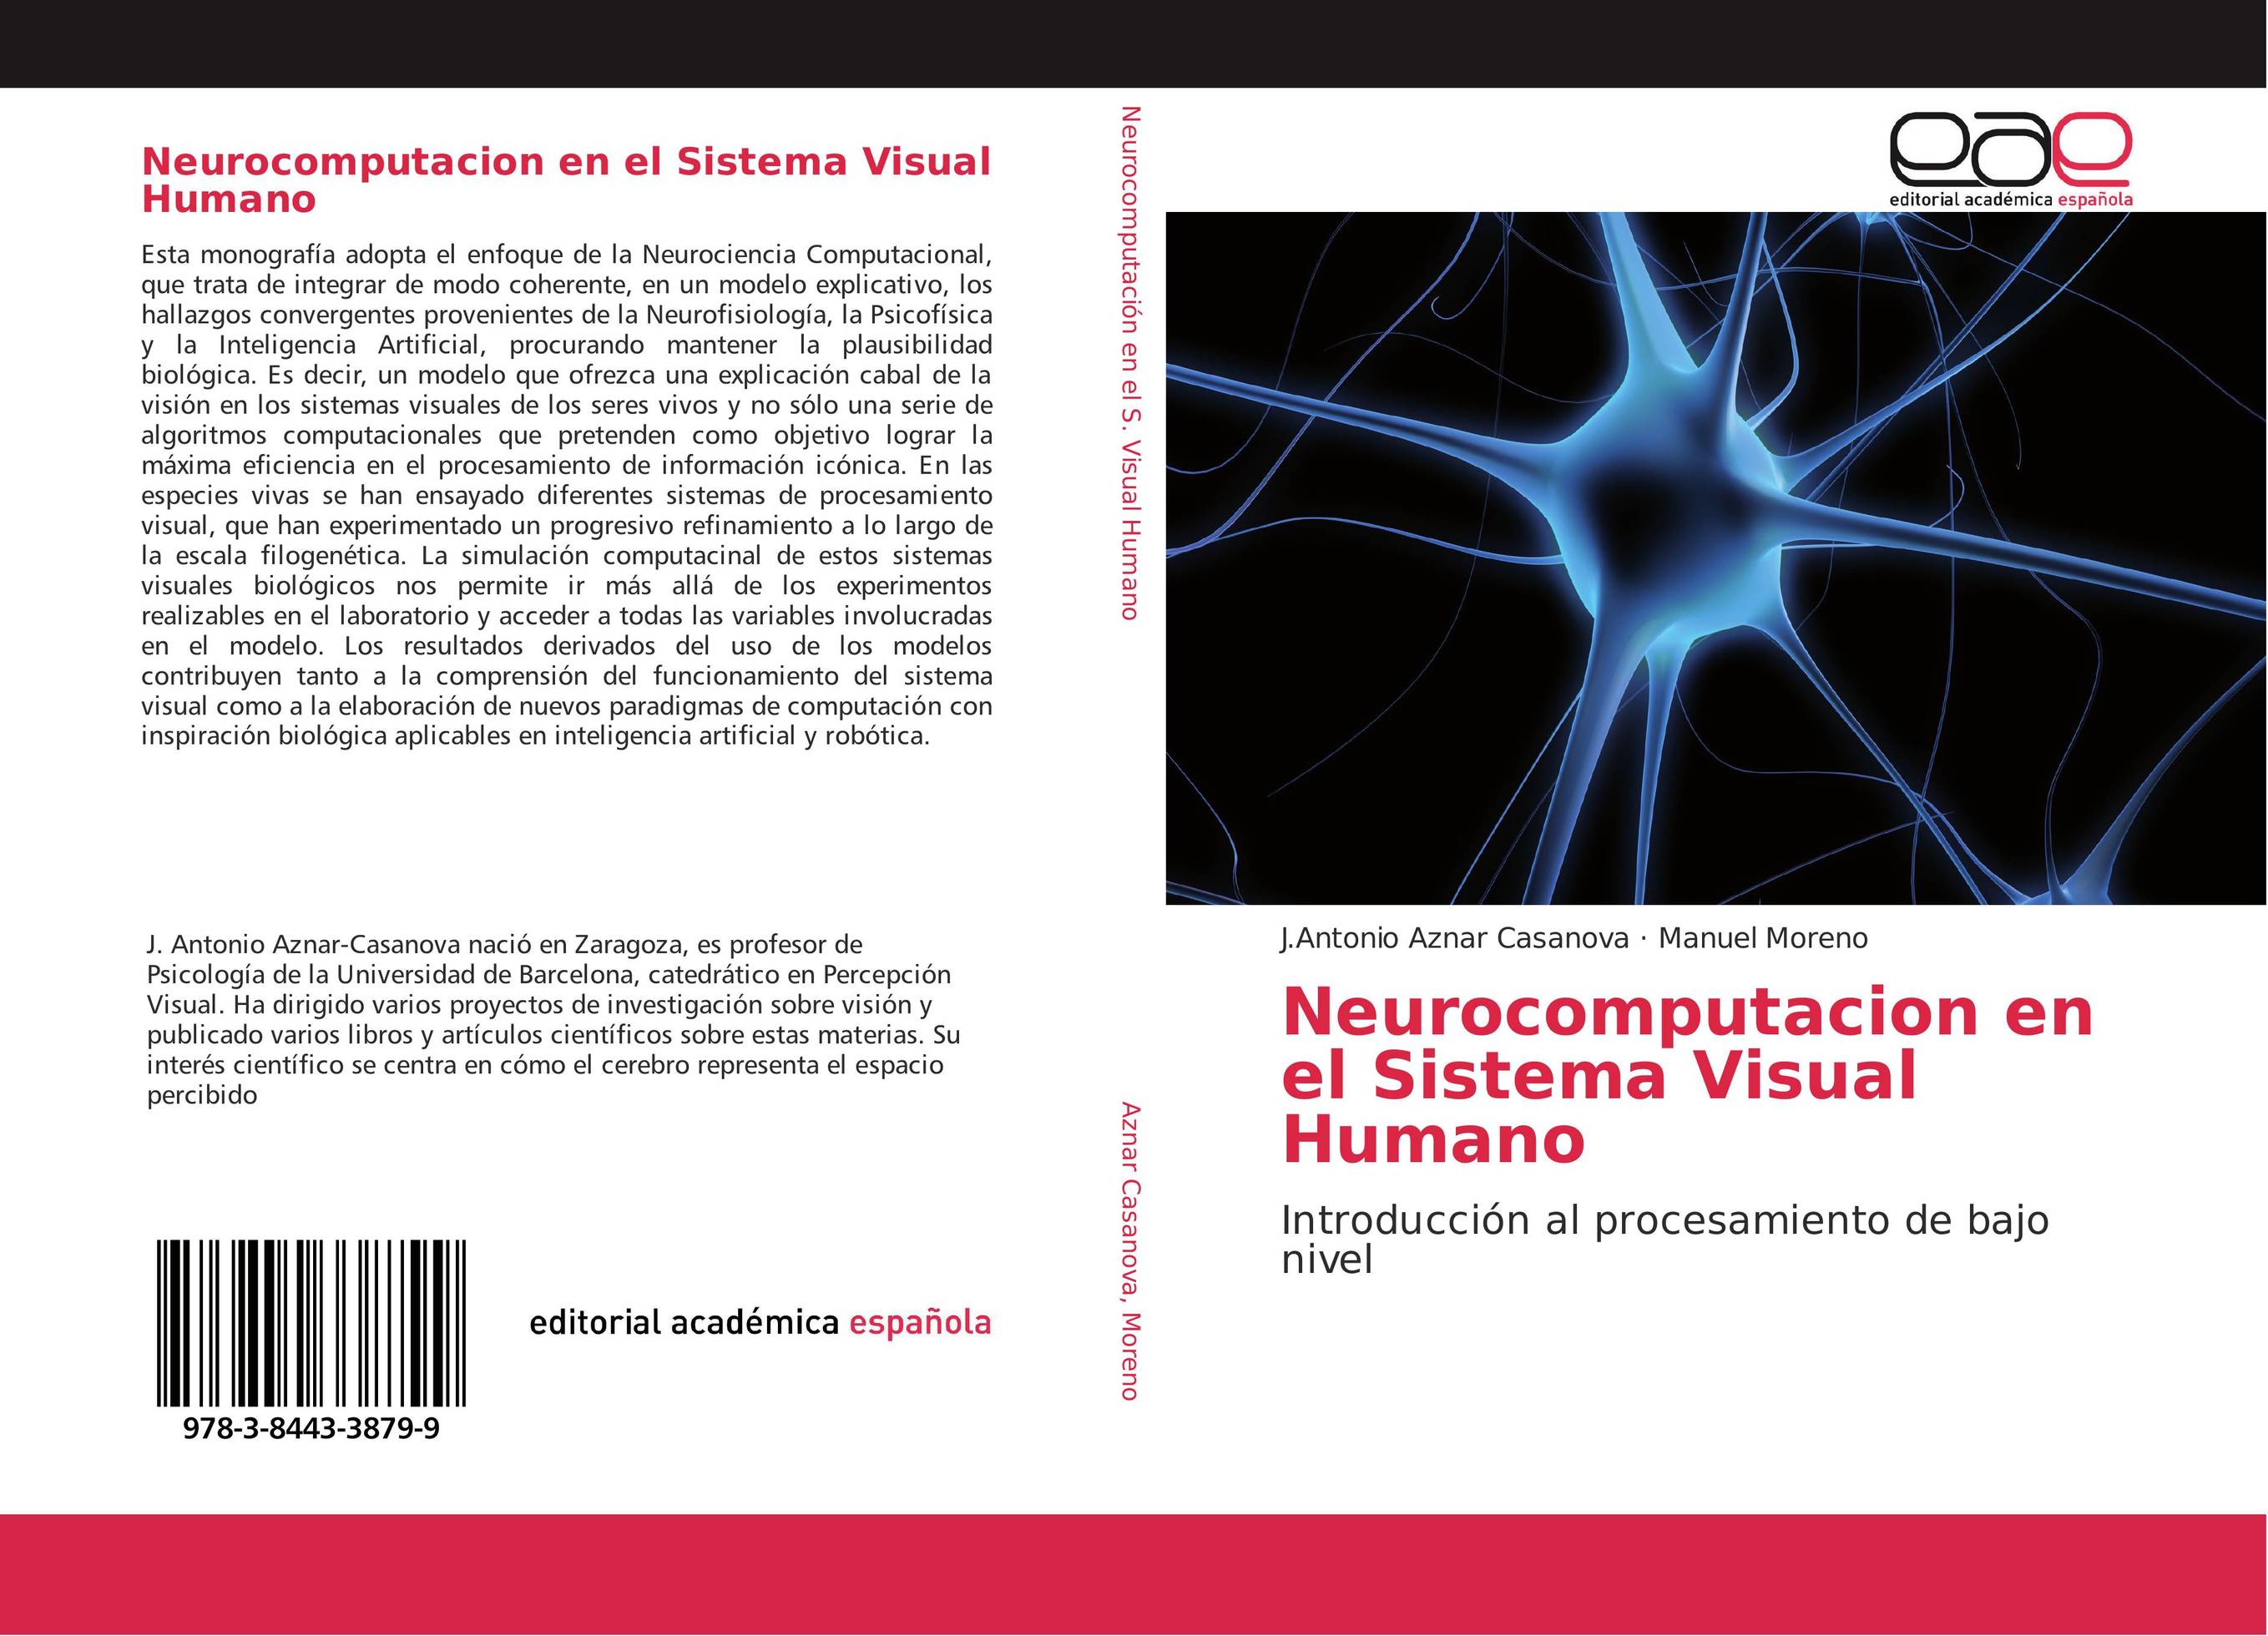 Neurocomputacion en el Sistema Visual Humano